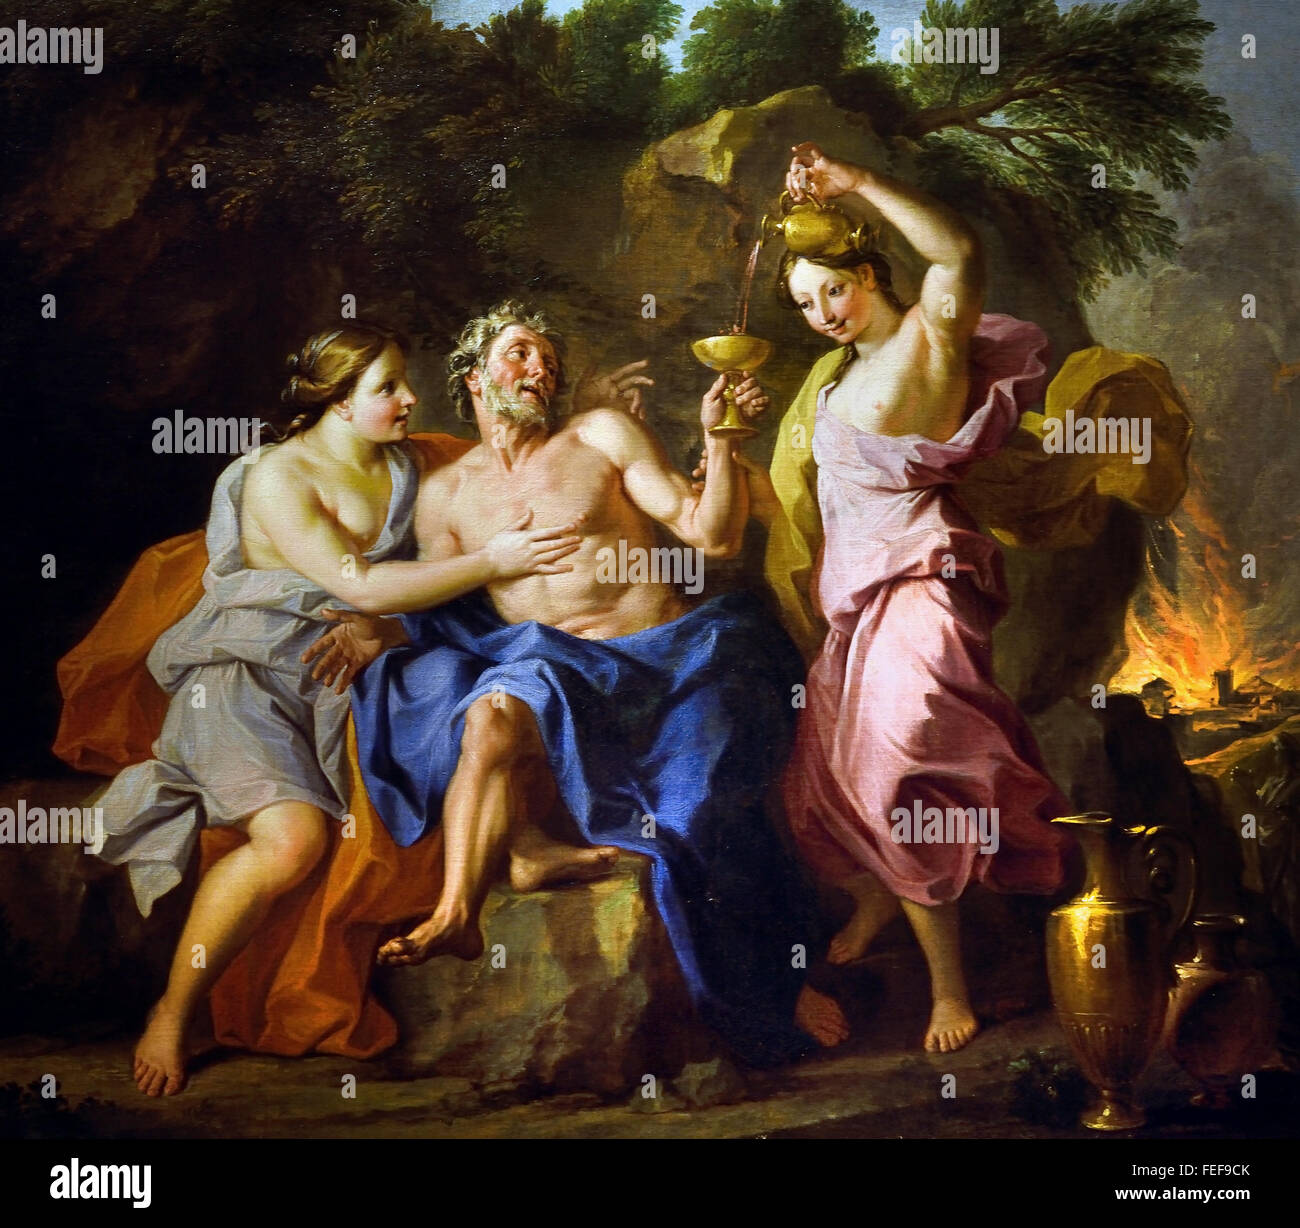 Lot und seine Töchter (oder Trunkenheit Menge) von Noël Coypel 1628 1707 Frankreich Französisch (elegante barocke Komposition. Harmonie-Patches von helle Farbe Kleidung rot weiß blau rosa und gelb. Unten rechts, Sodom in Flammen) Stockfoto